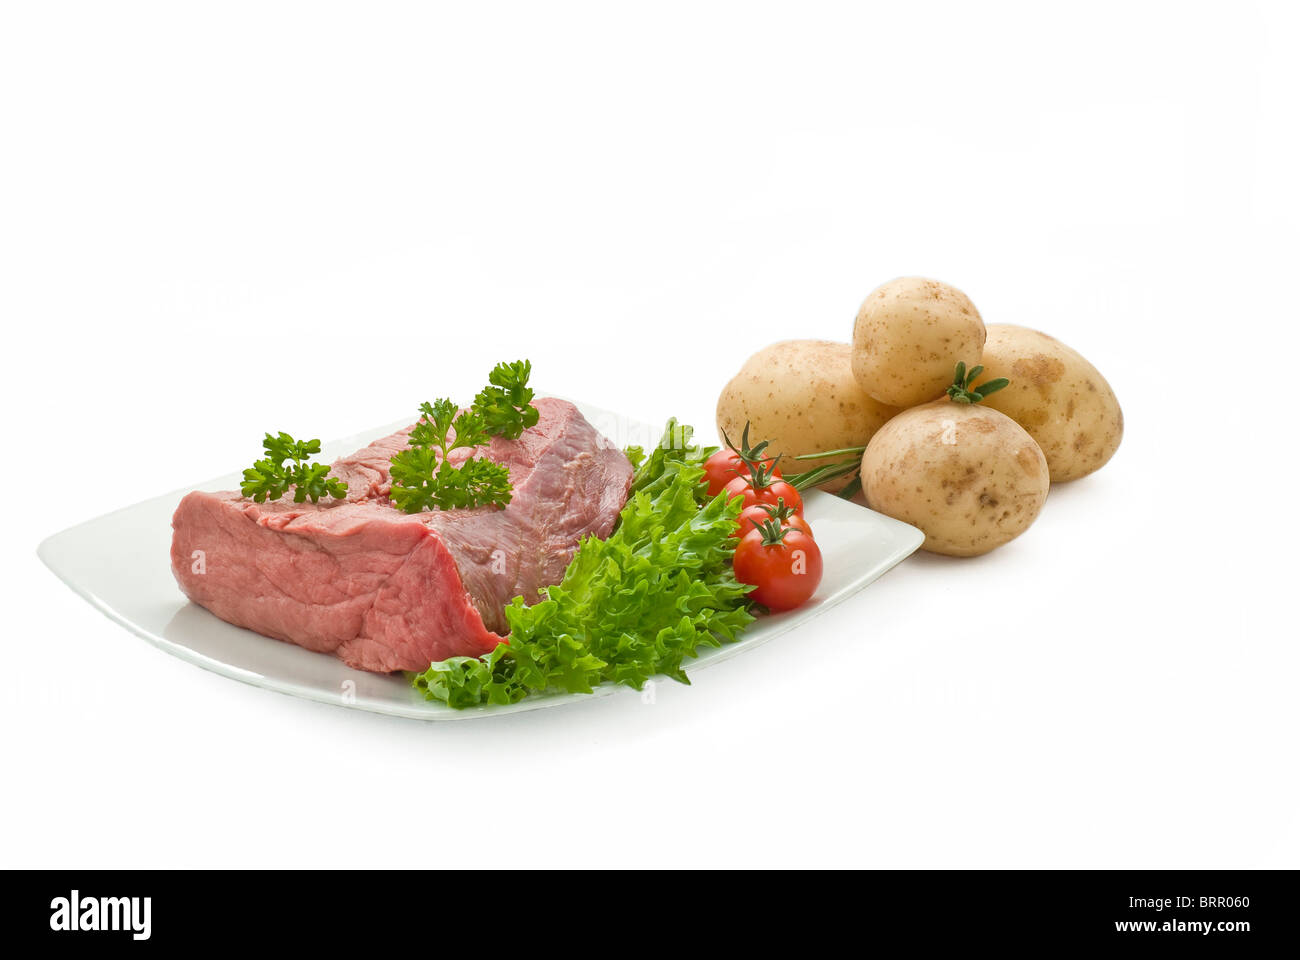 Carni bovine fresche unirsi con patate insalata di pomodoro e le erbe aromatiche Foto Stock